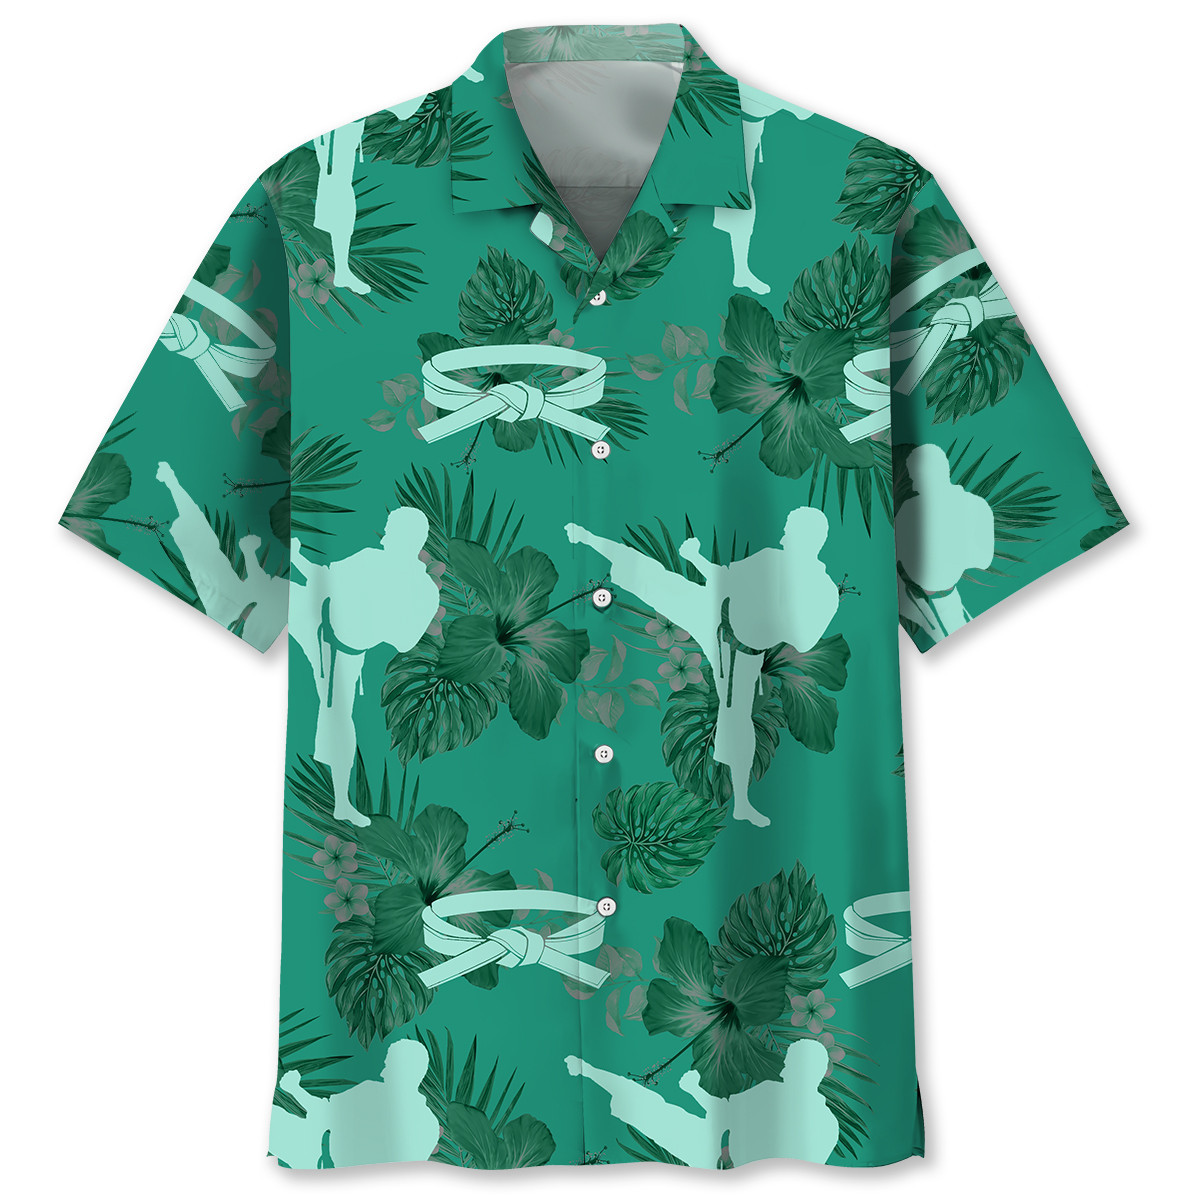 NEW Karate Kelly Green Hawaiian Shirt